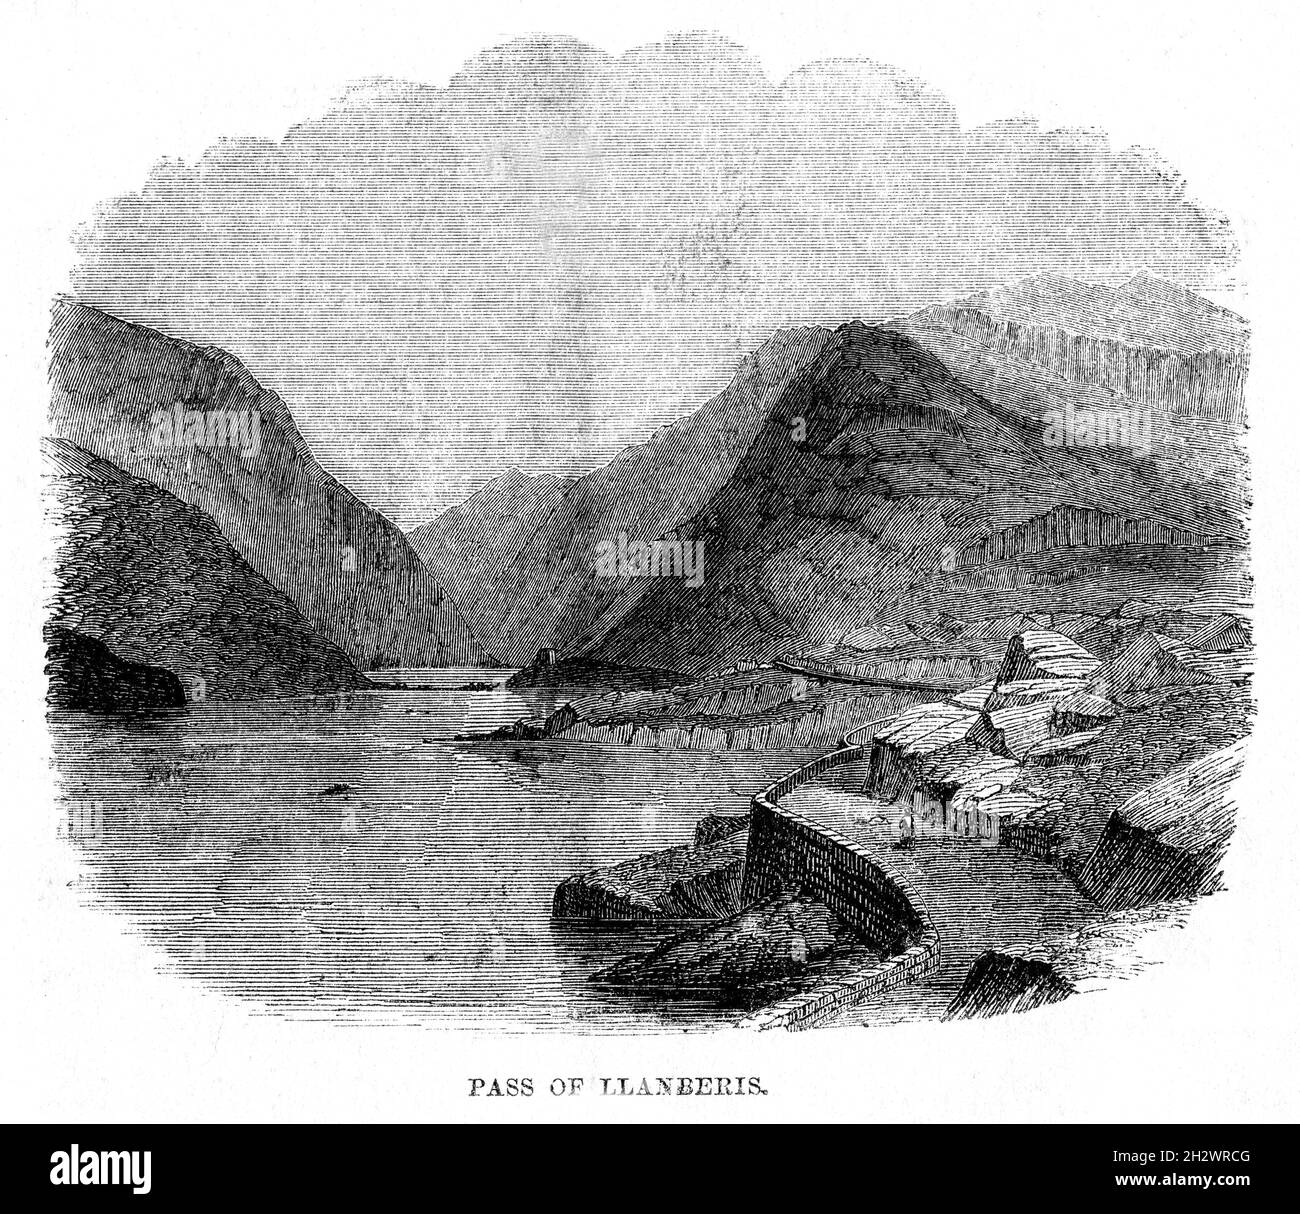 Une illustration en bois de 1859 intitulée "Col de Llanberis".Le col de Llanberis à Snowdonia, au pays de Galles, transporte la route du sud-est vers Llanberis, au-dessus du col de Pen y, entre les chaînes de montagnes du Glyderau et le massif des Snowdon. Banque D'Images